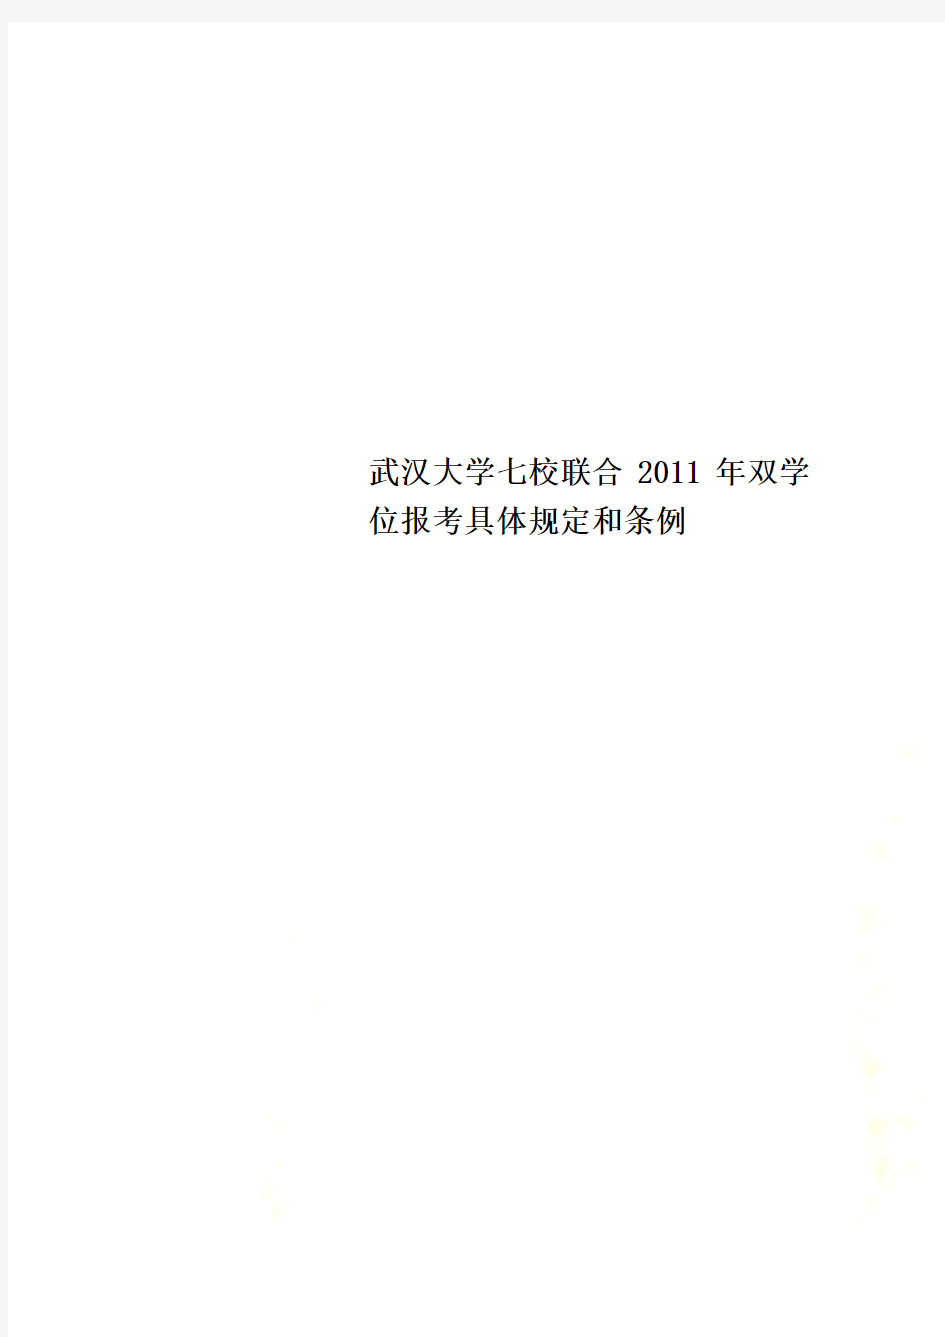 武汉大学七校联合2011年双学位报考具体规定和条例